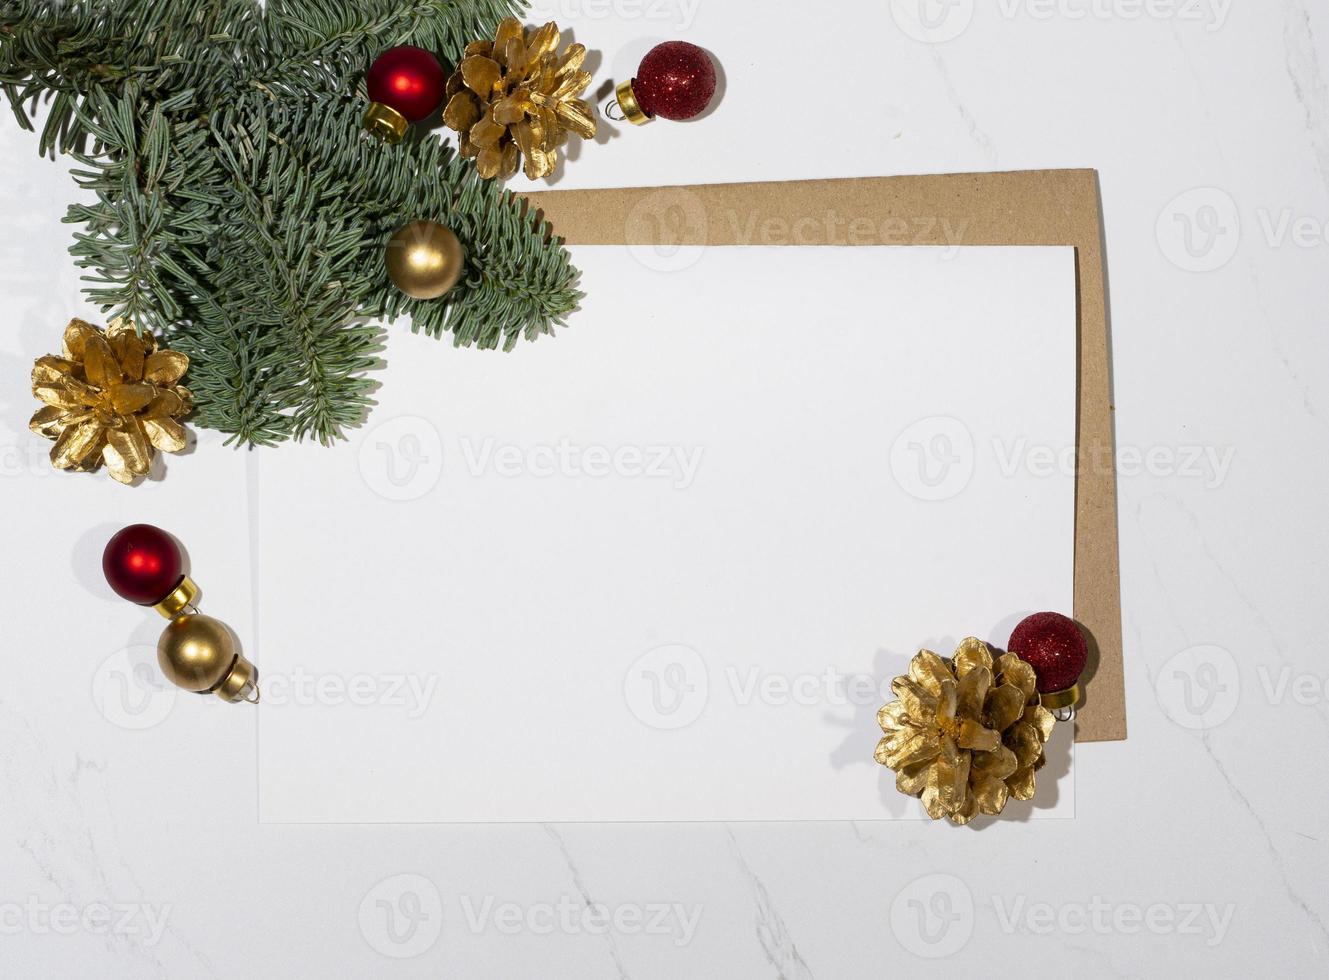 Natale albero con i regali su il tavolo foto